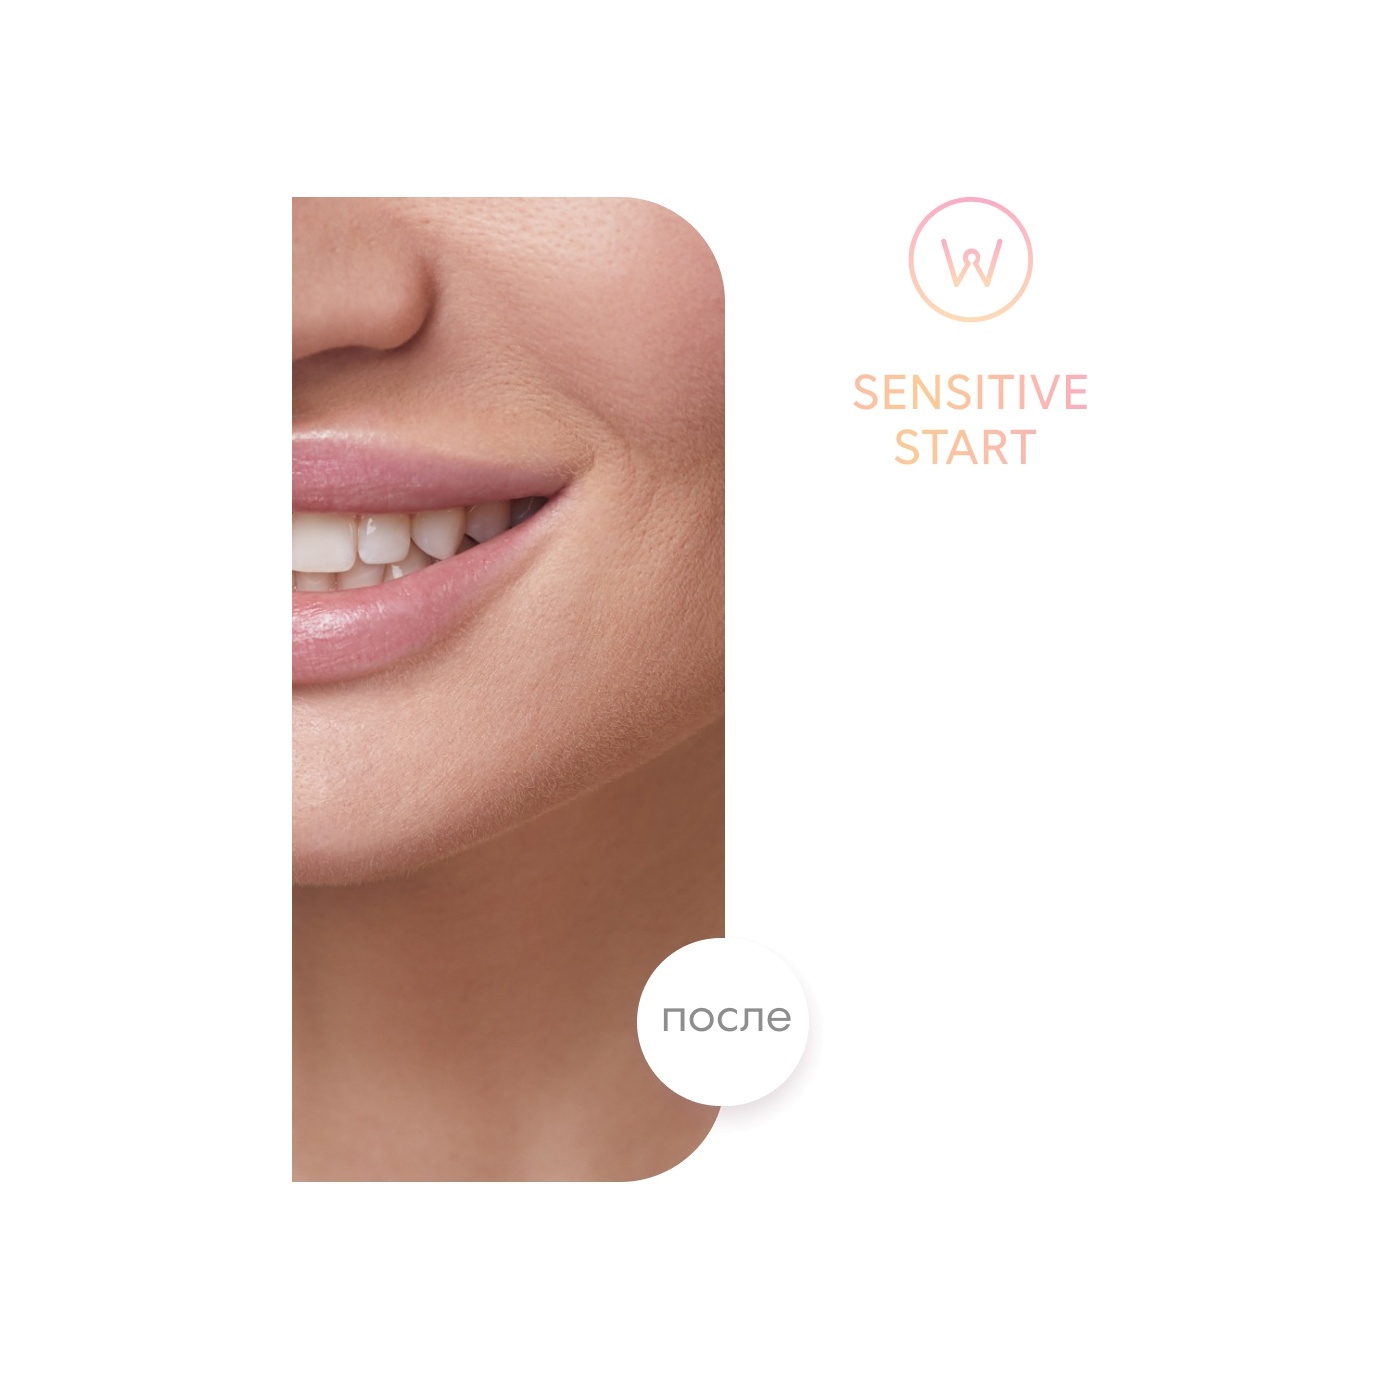 Полоски для зубов отбеливающие Sensitive Start  купить в VISAGEHALL